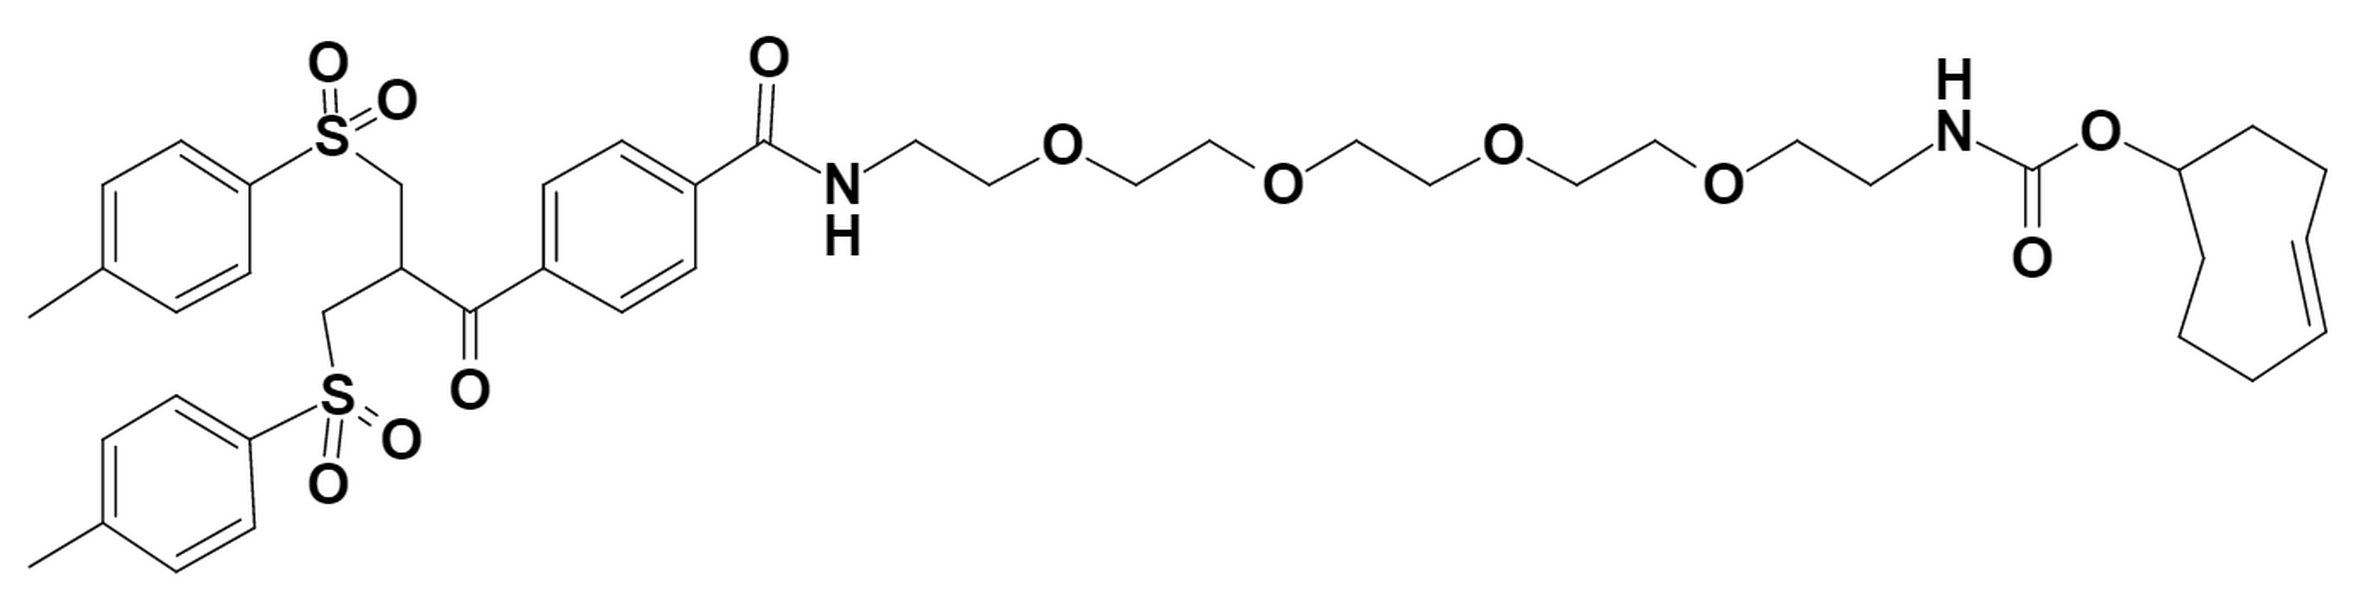 Bis-sulfone-PEG4-TCO